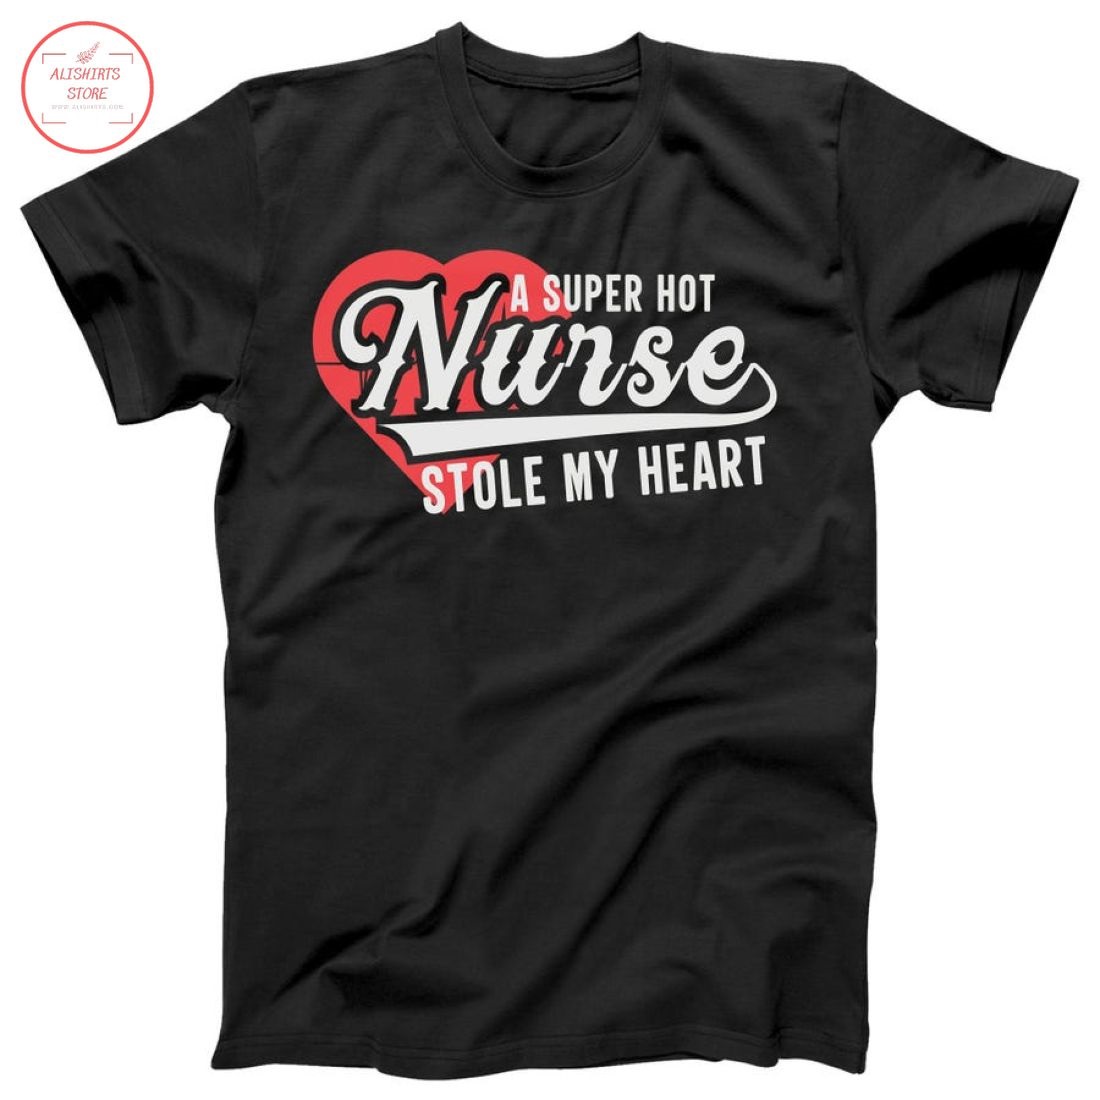 A Super Hot Nurse Stole My Heart Shirt